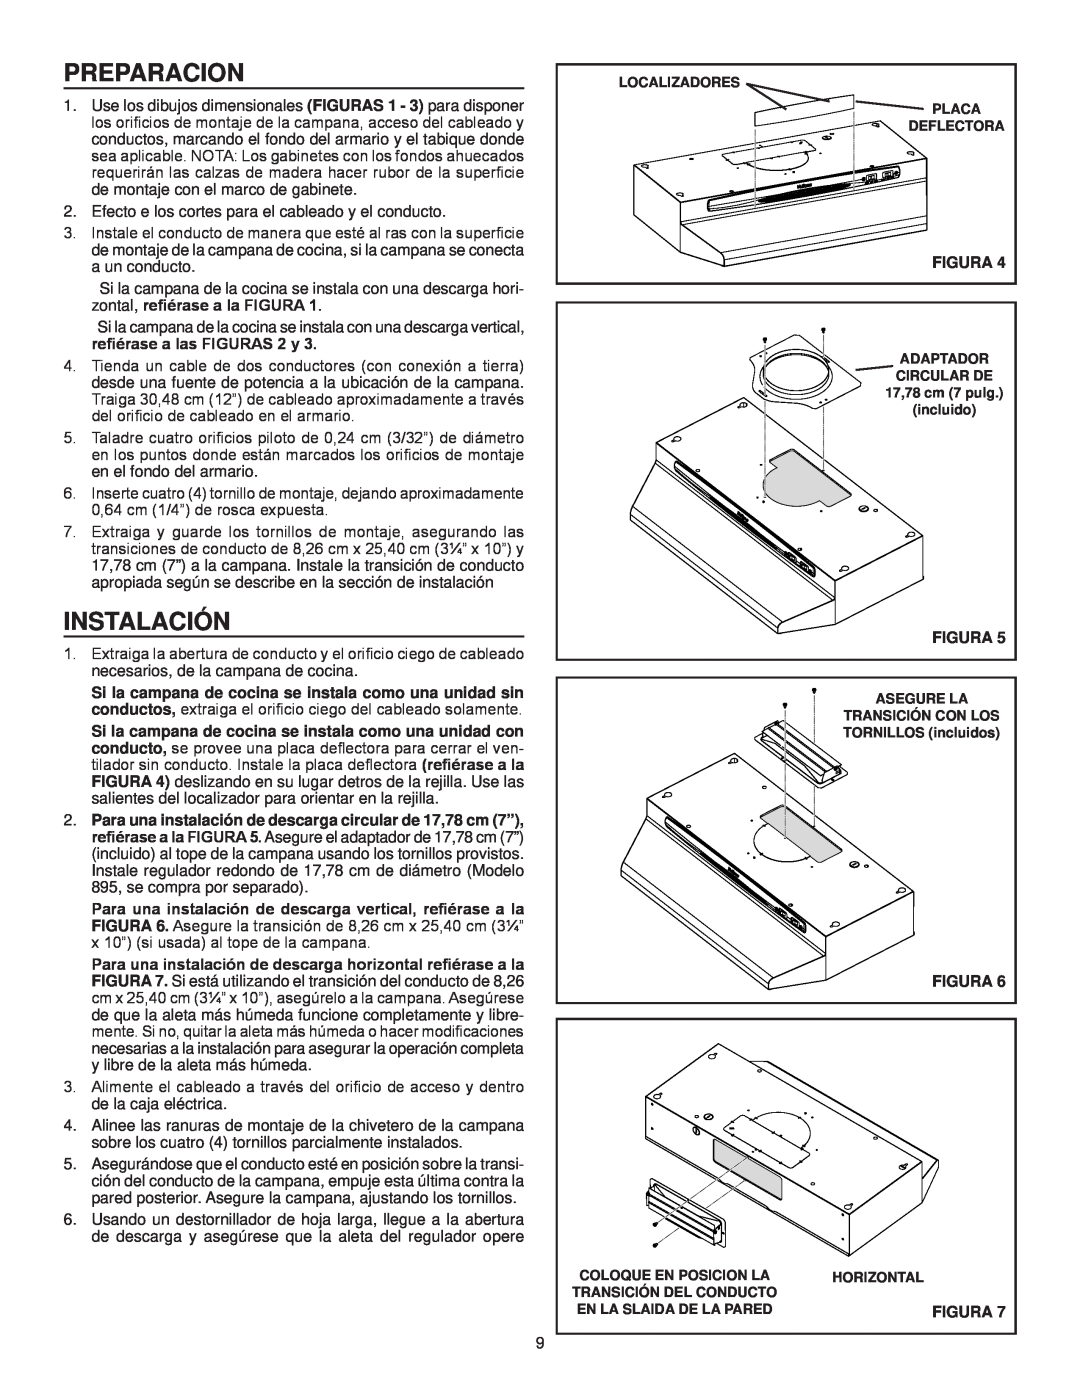 NuTone NS6500 Series installation instructions Preparacion, instalación, Figura 